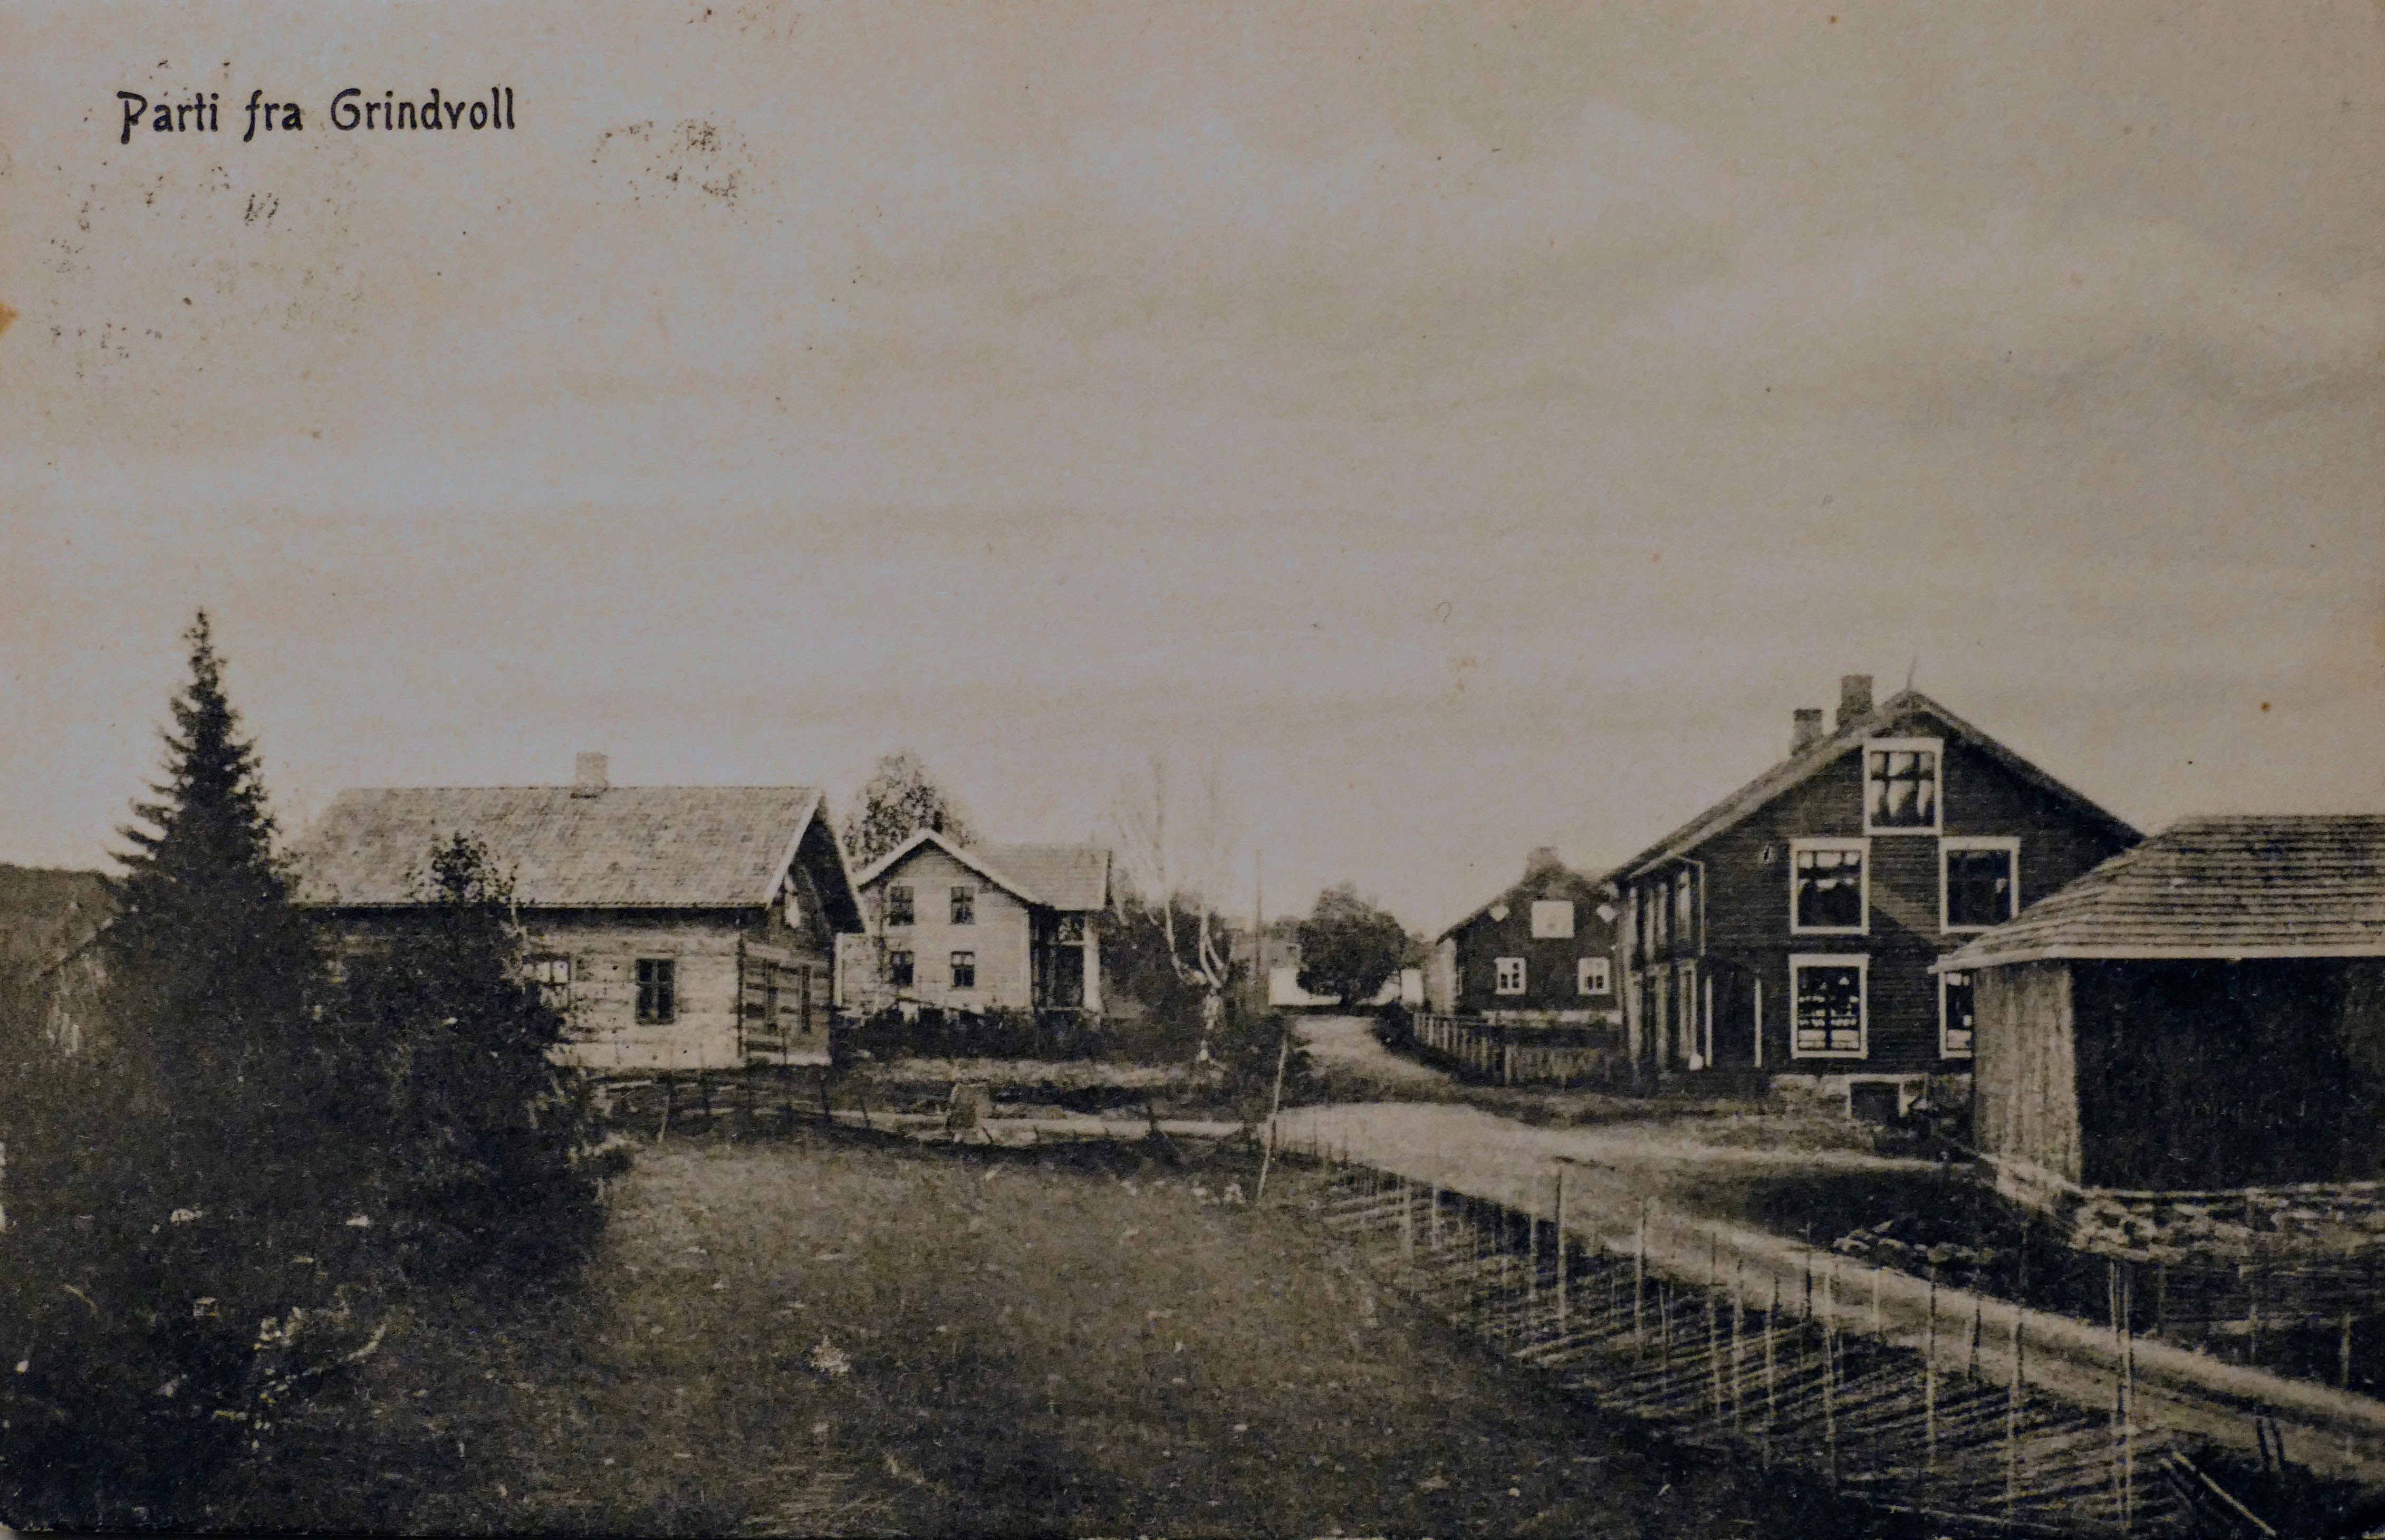 Stua Grinen, til venstre i bildet, finner vi på kart fra 1827. Denne stua kan være Grindvolls eldste bygning. Bygningen slik vi ser den i dag, ble reist rundt denne tømmerstua. Prospektkortet er utlånt av Brit B. Ballangrud.